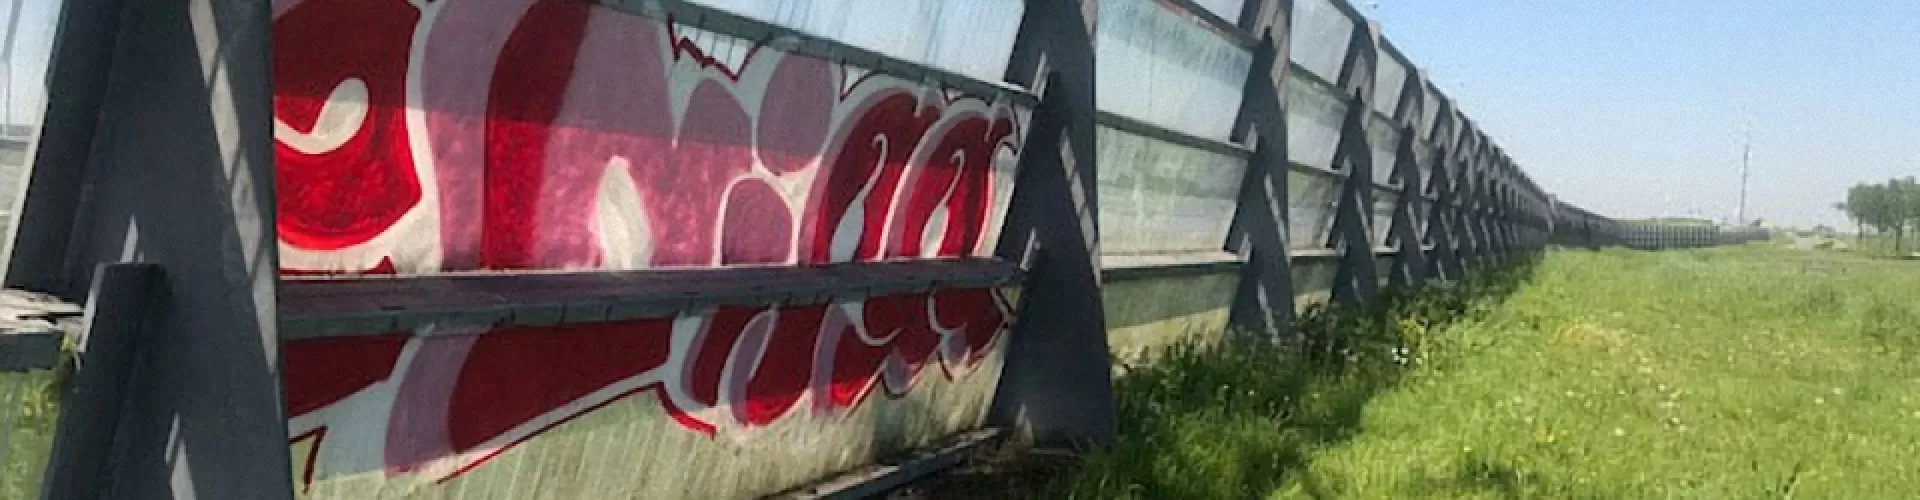 Zoekt u een bedrijf om muurverf graffiti te verwijderen?